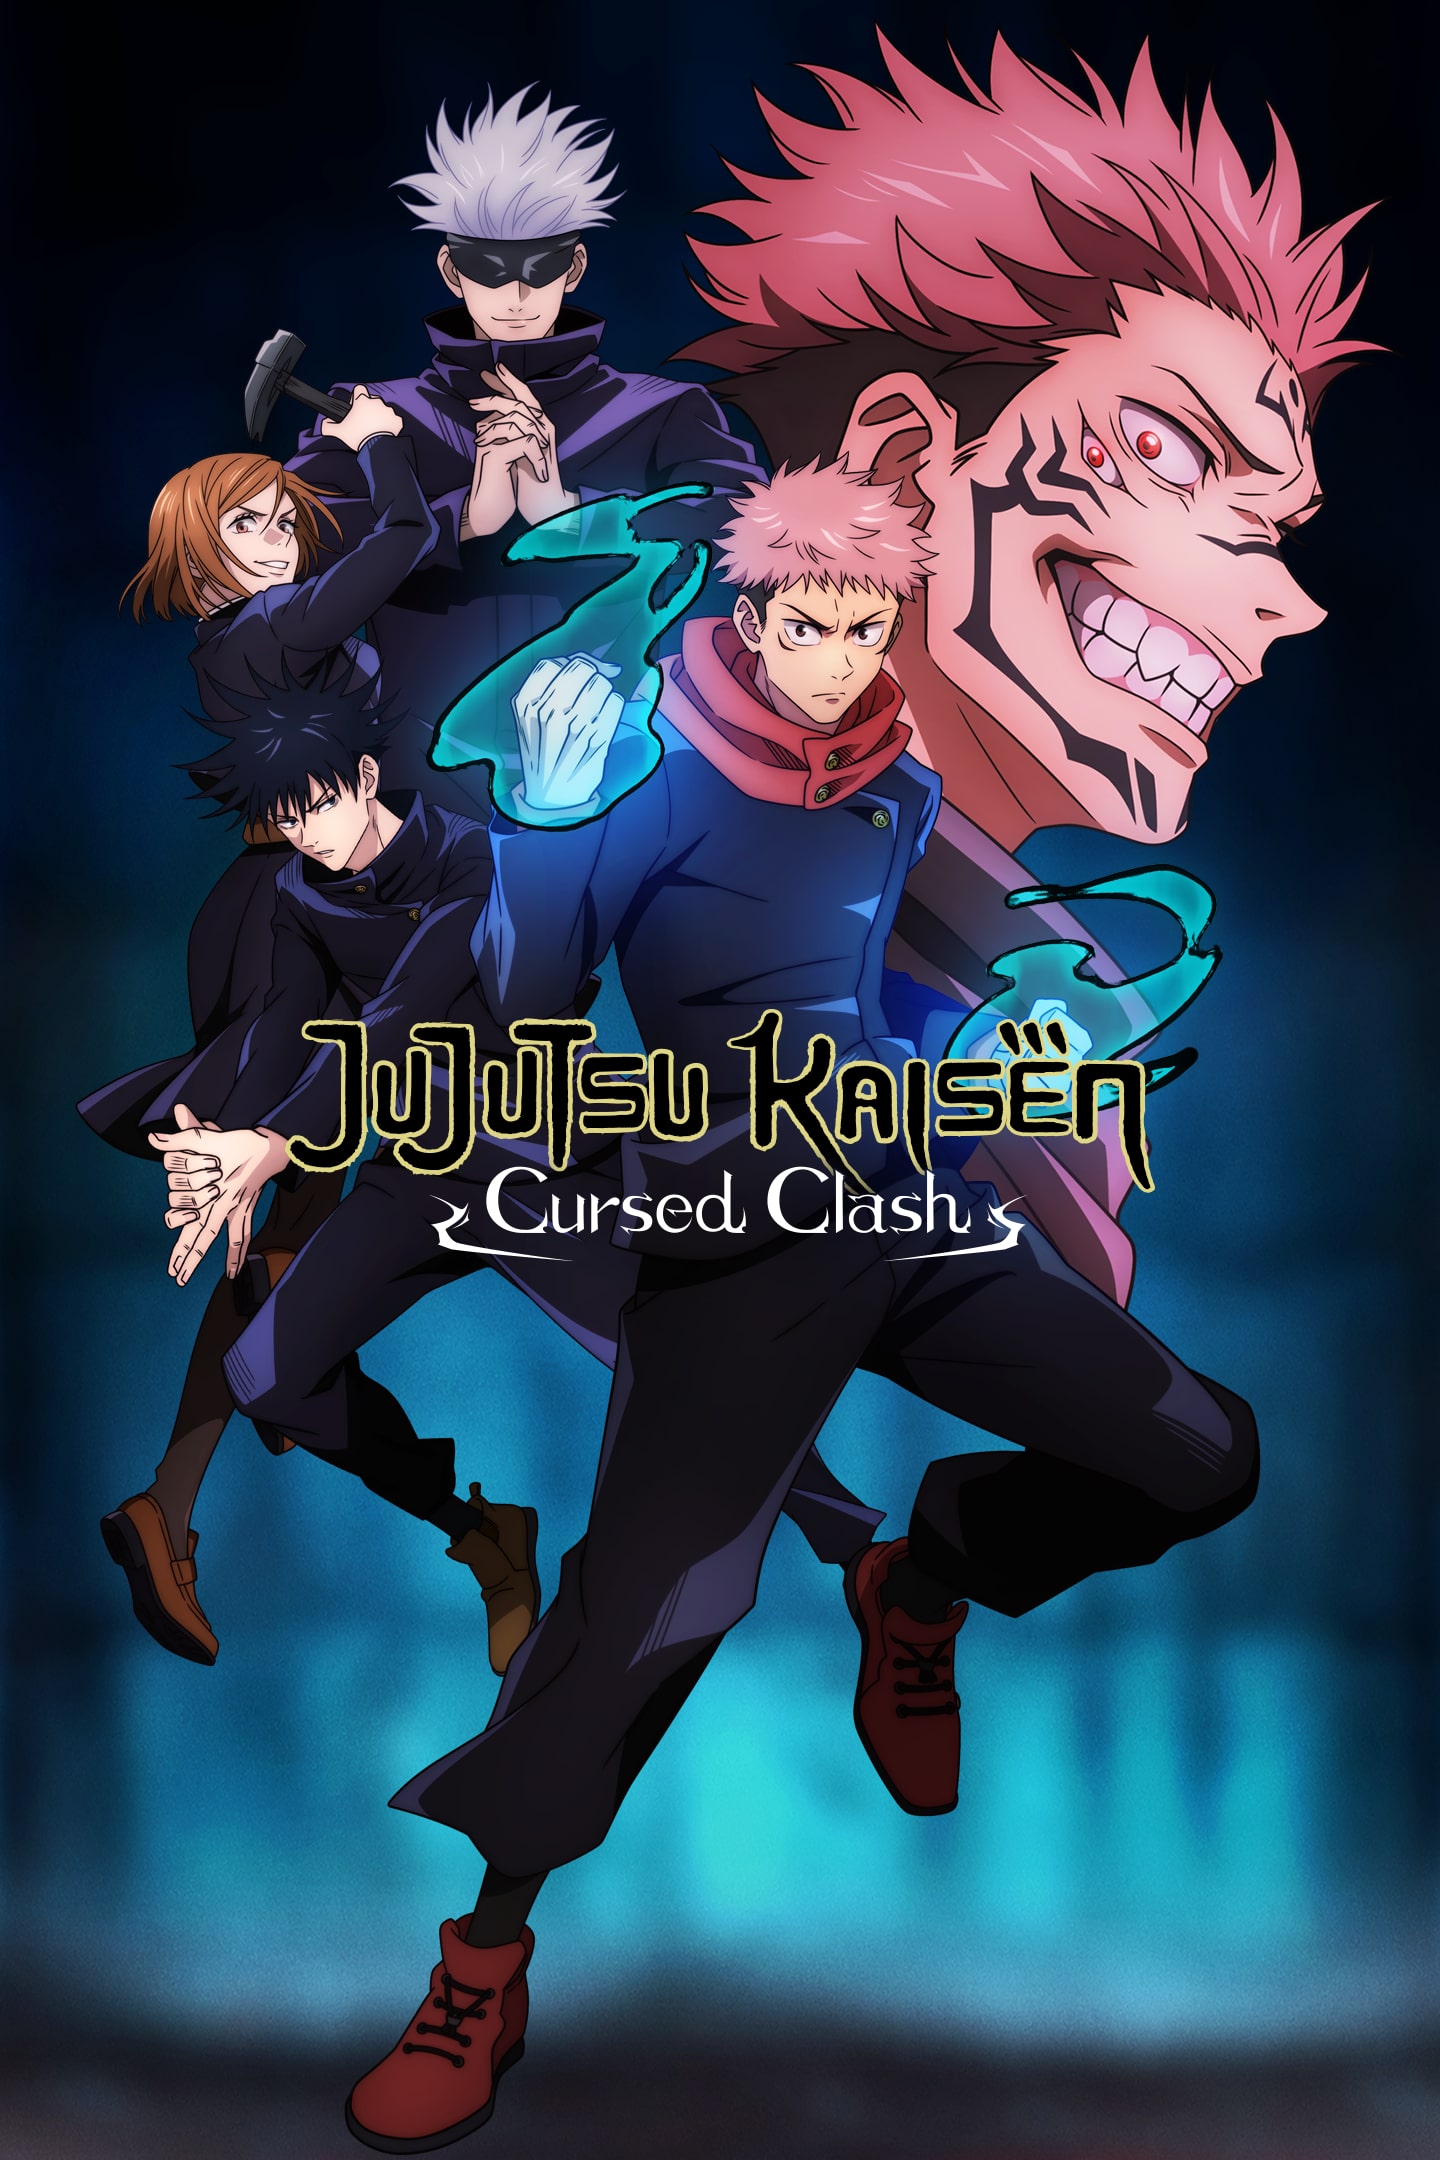 Jogo de luta Jujutsu Kaisen Cursed Clash é revelado pela Bandai Namco